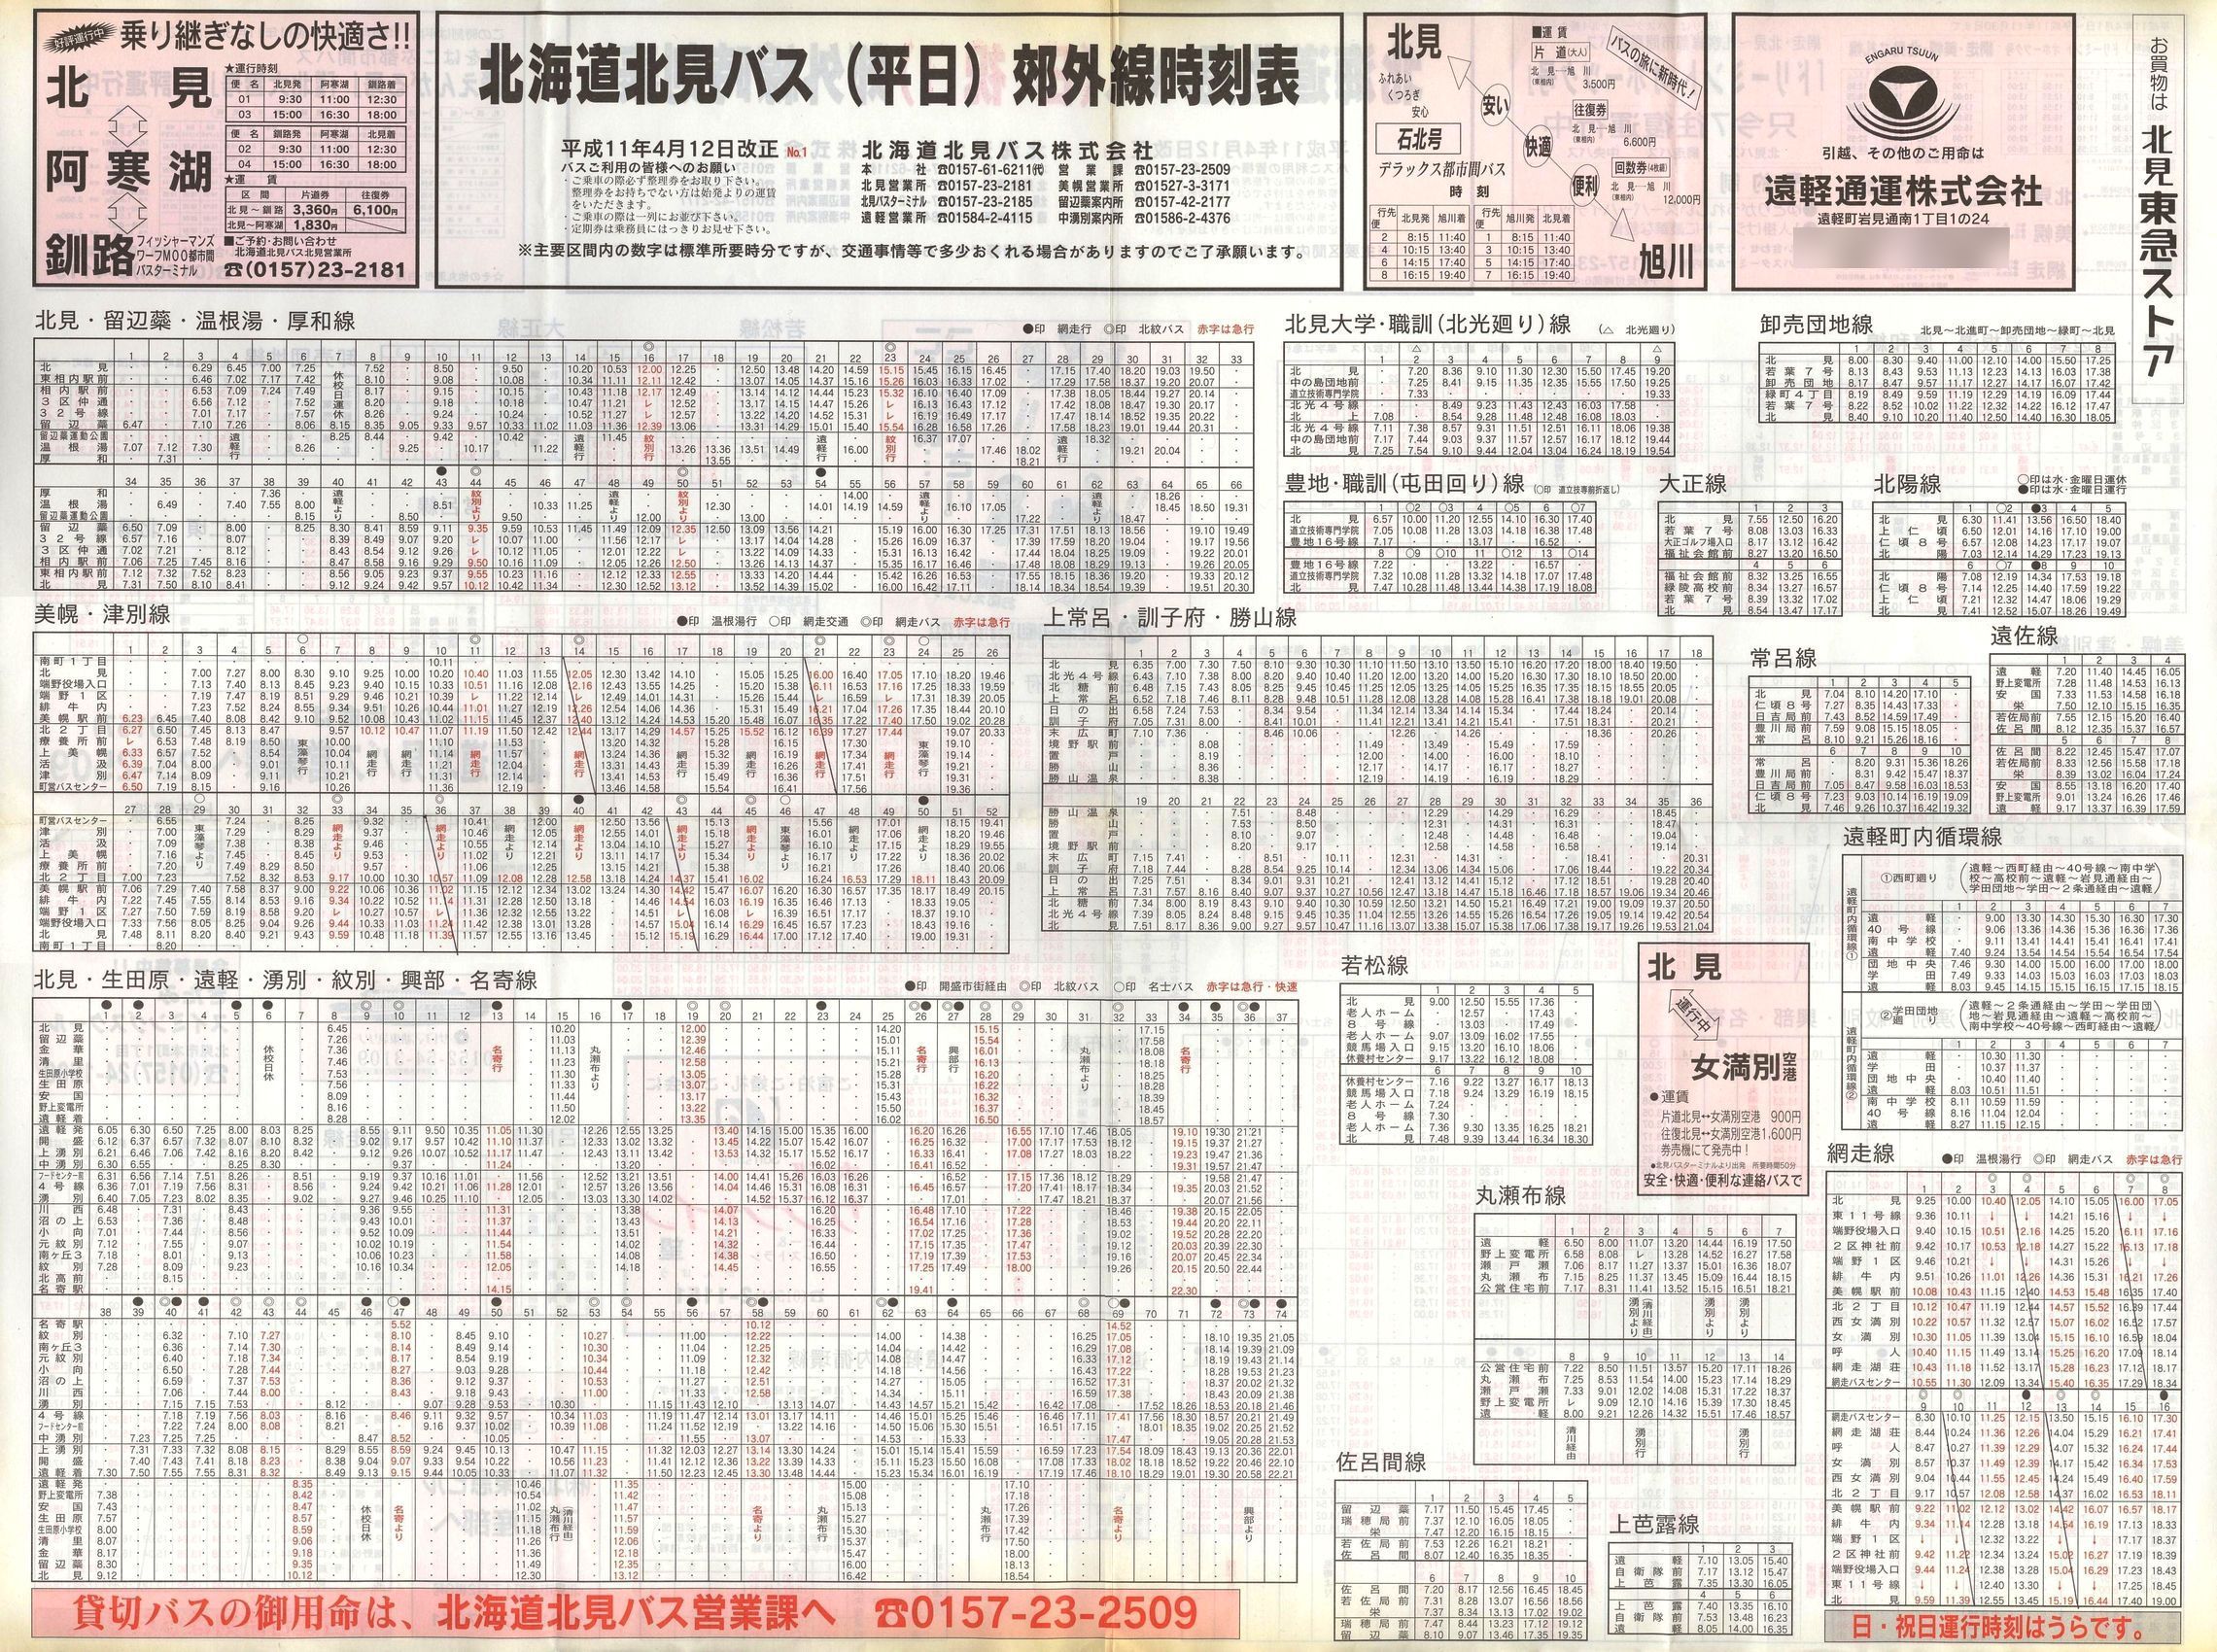 1999-04-12改正_北海道北見バス_郊外線時刻表表面